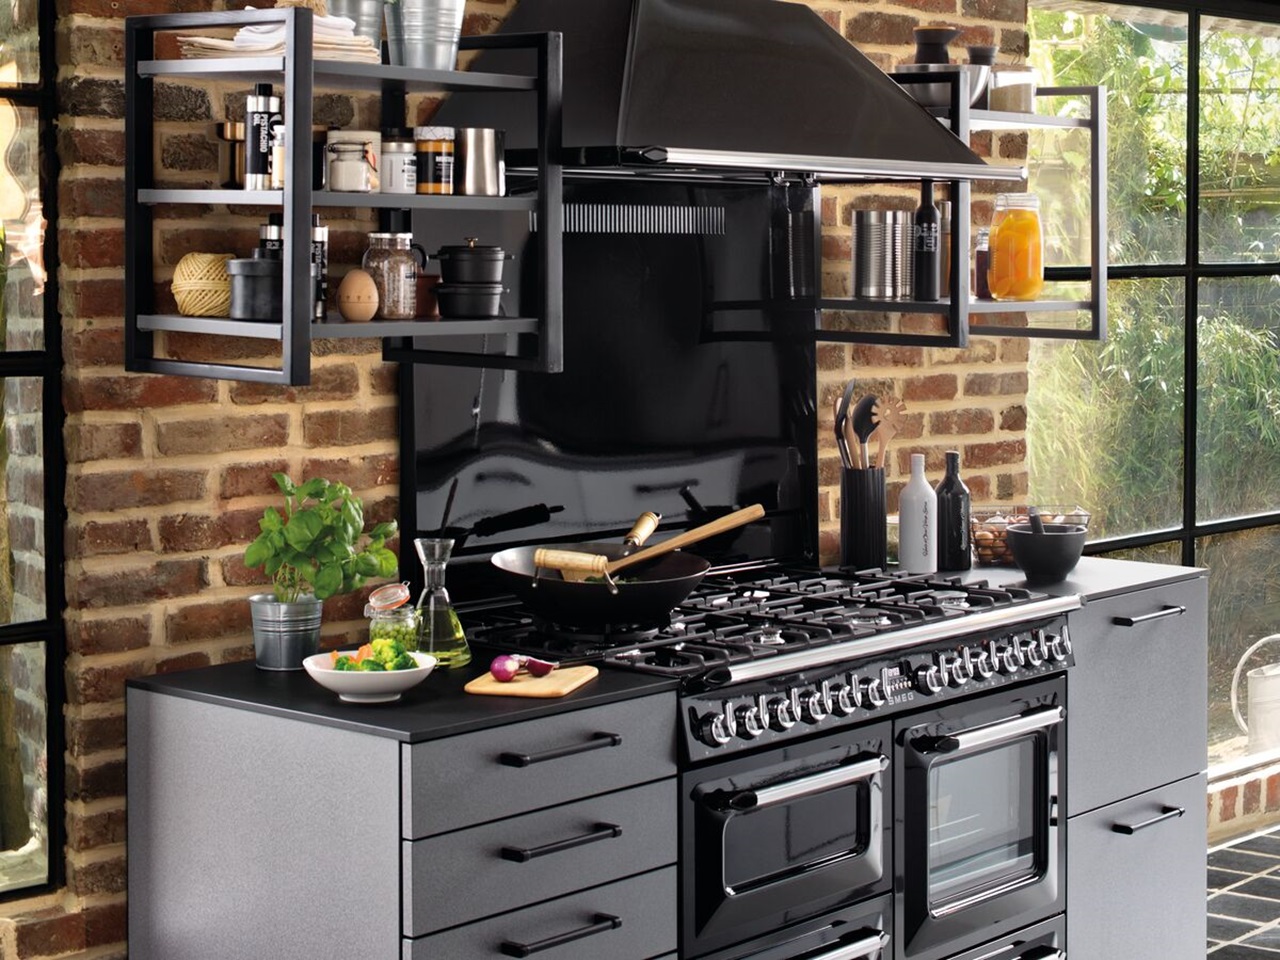 Piano de cuisson SMEG noir et hotte aspirante avec étagères métalliques